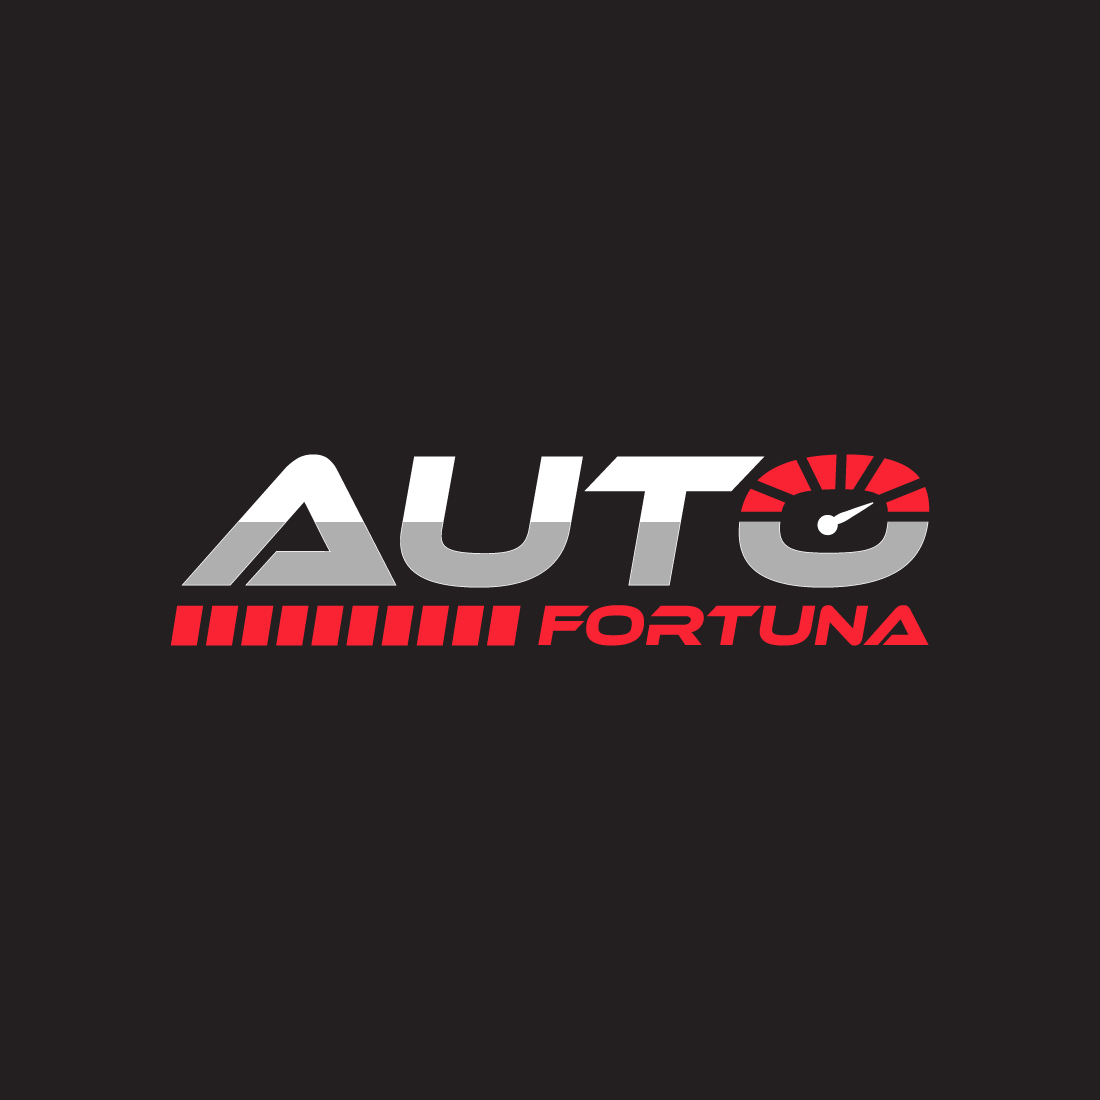 Auto Fortuna preview image.